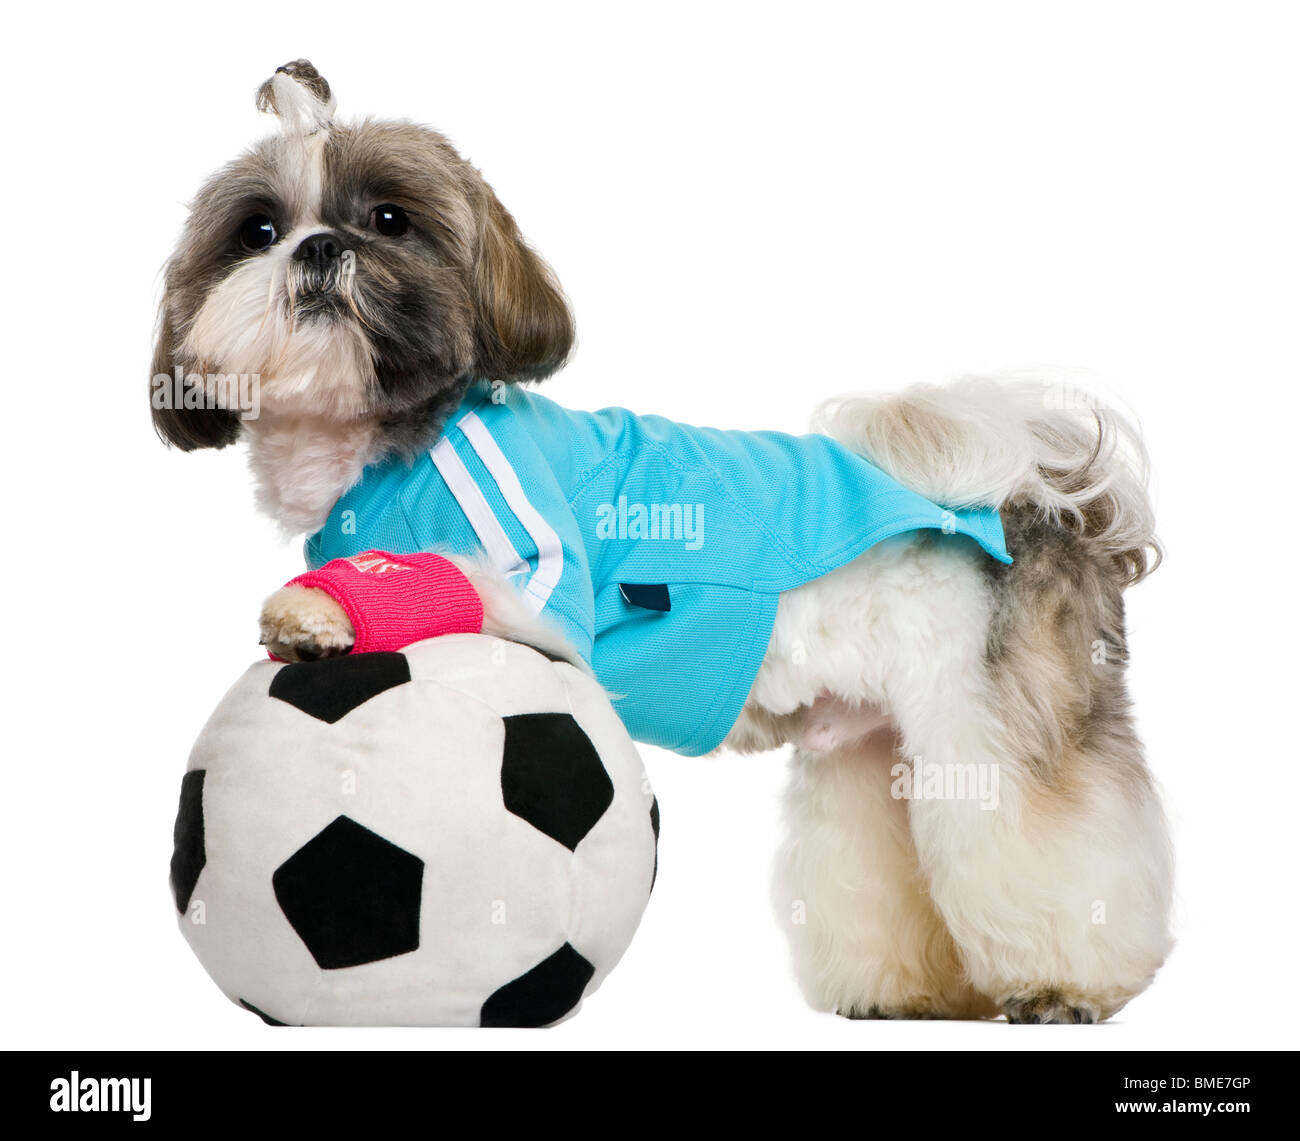 Shih Tzu, 18 mois, habillé avec ballon de soccer, in front of white background Banque D'Images